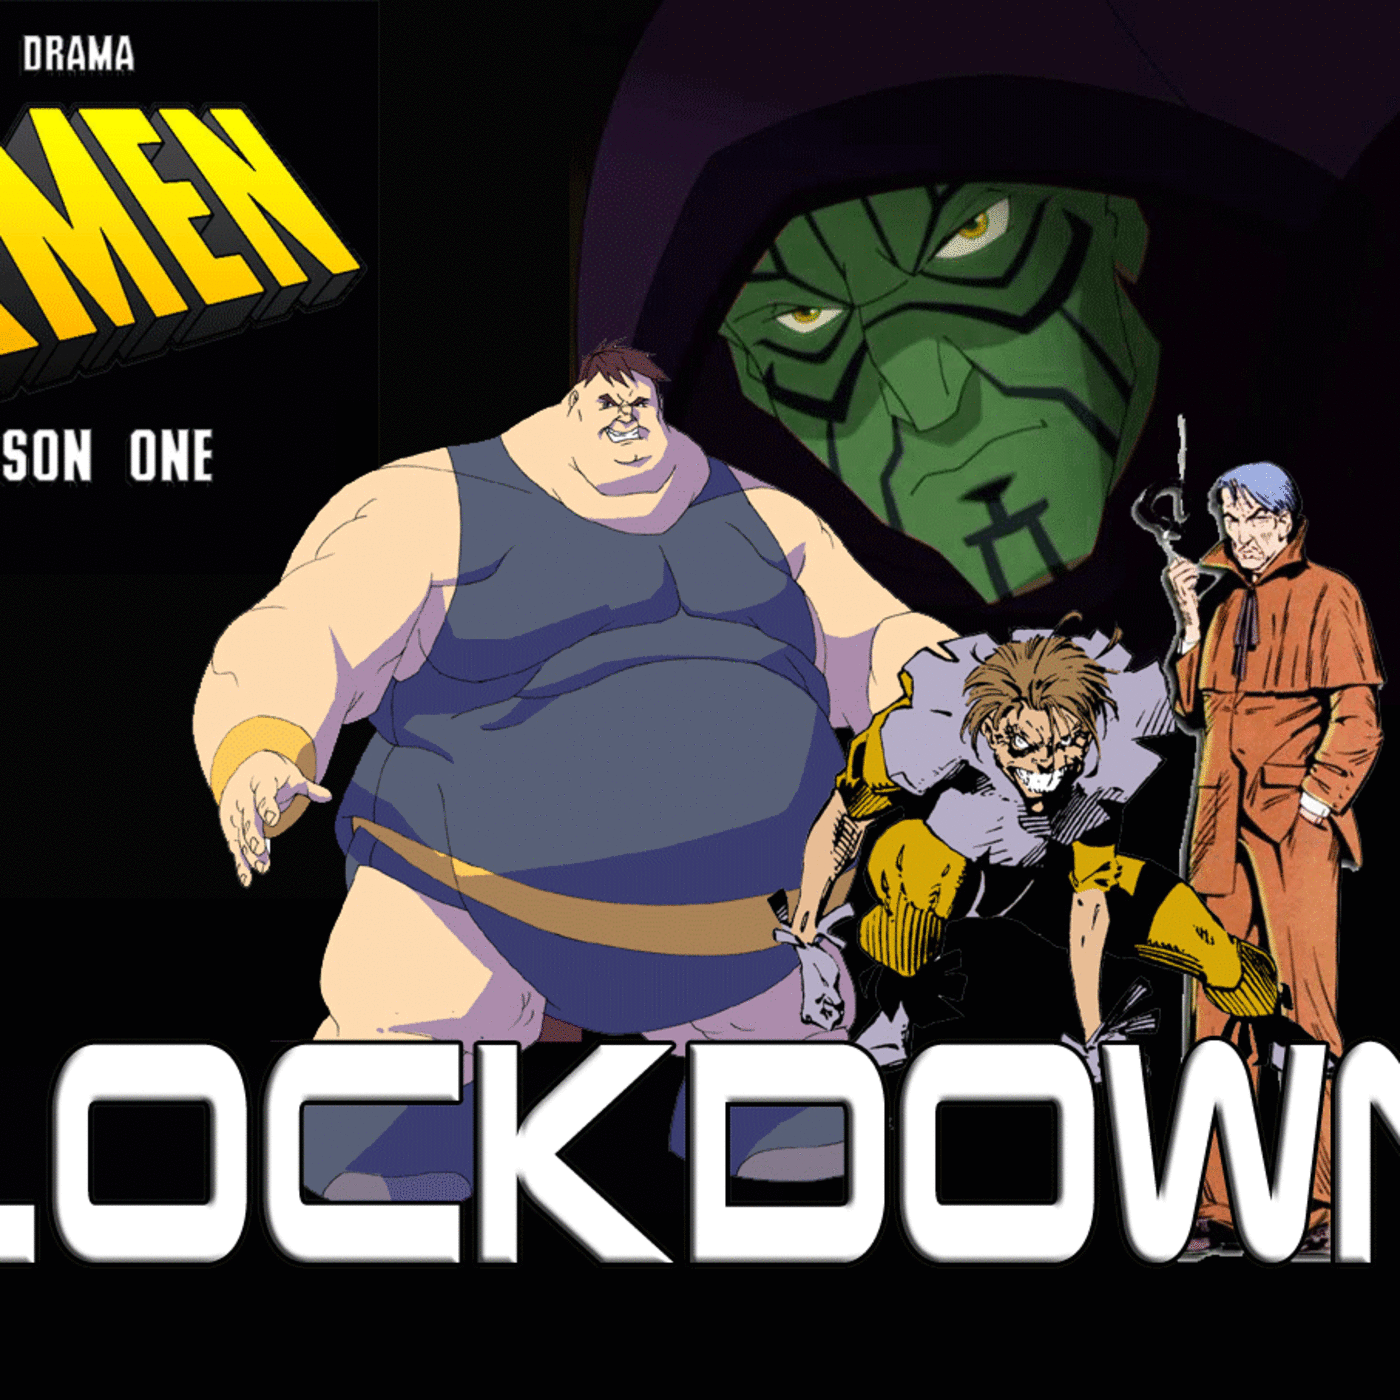 S1: Lockdown